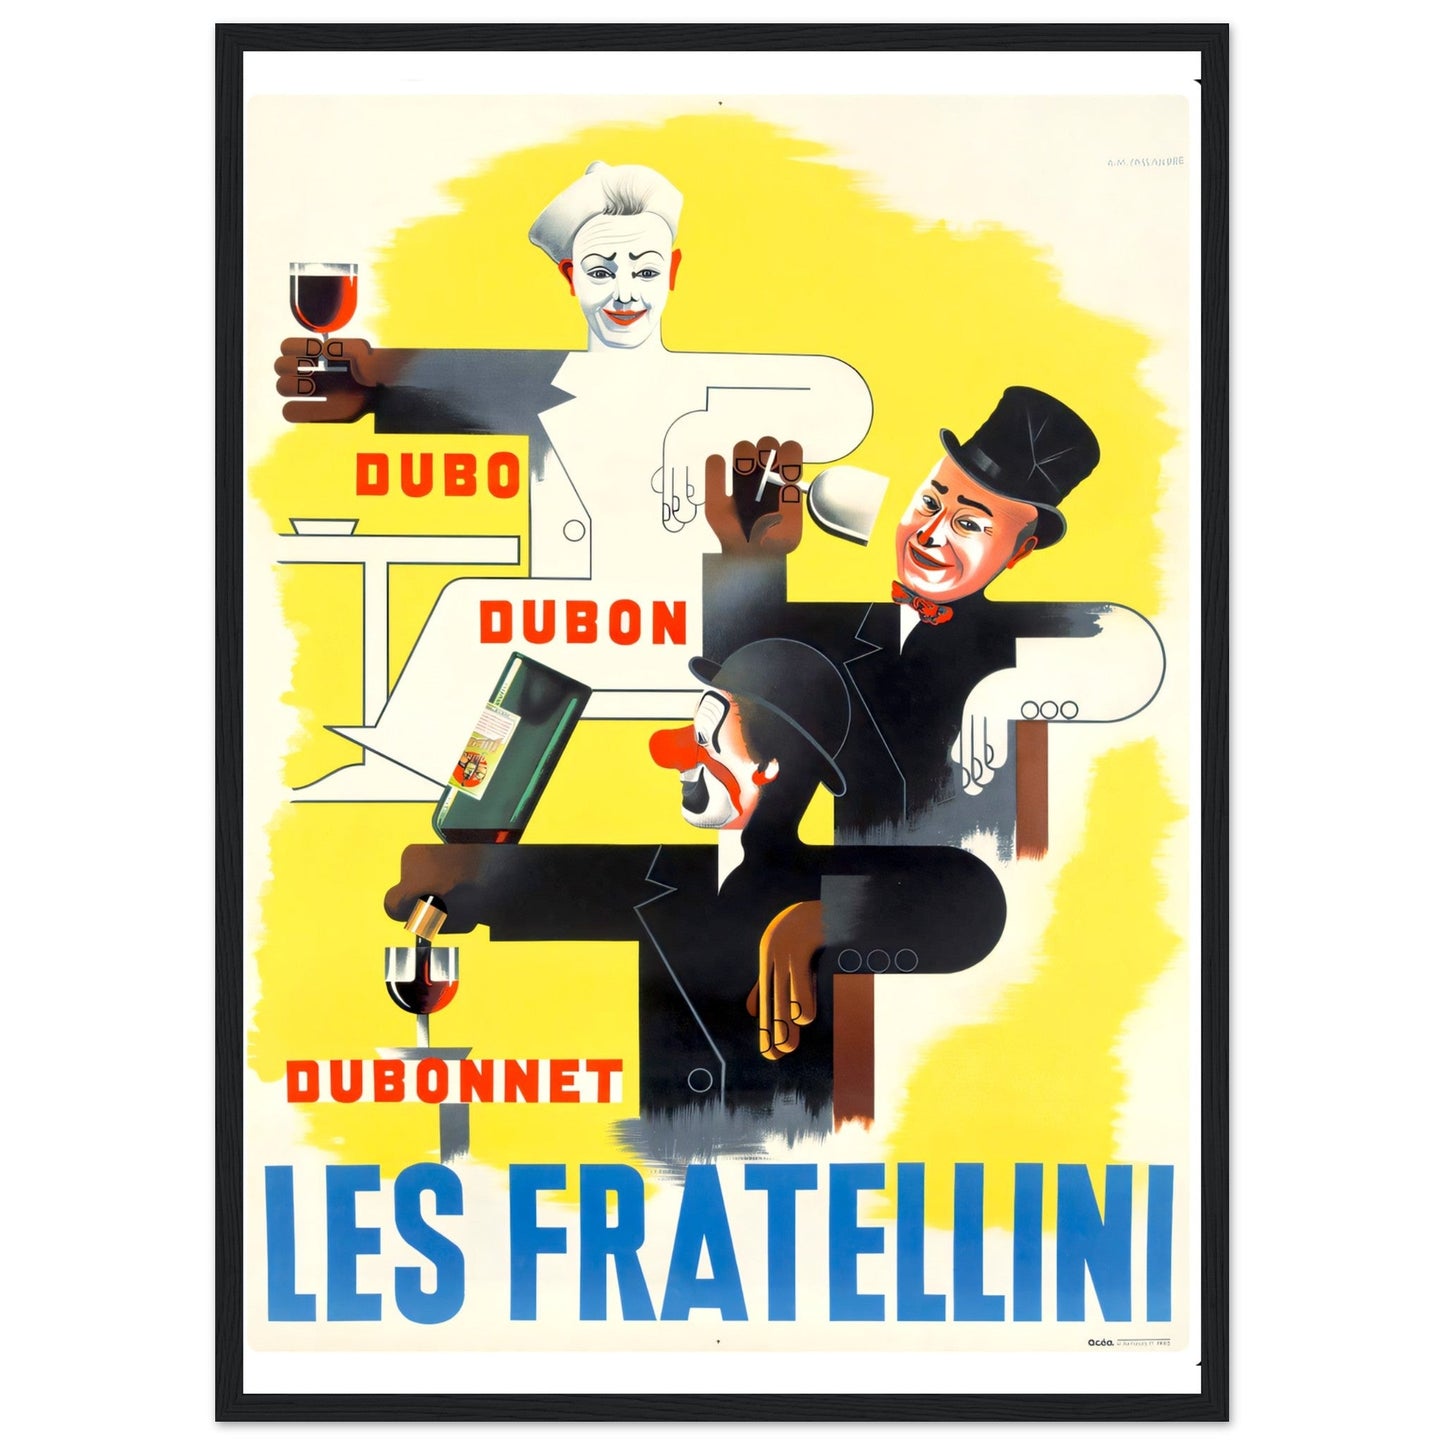 Les Fratellini Vintage poster reprint on Premium Matte Paper - Posterify